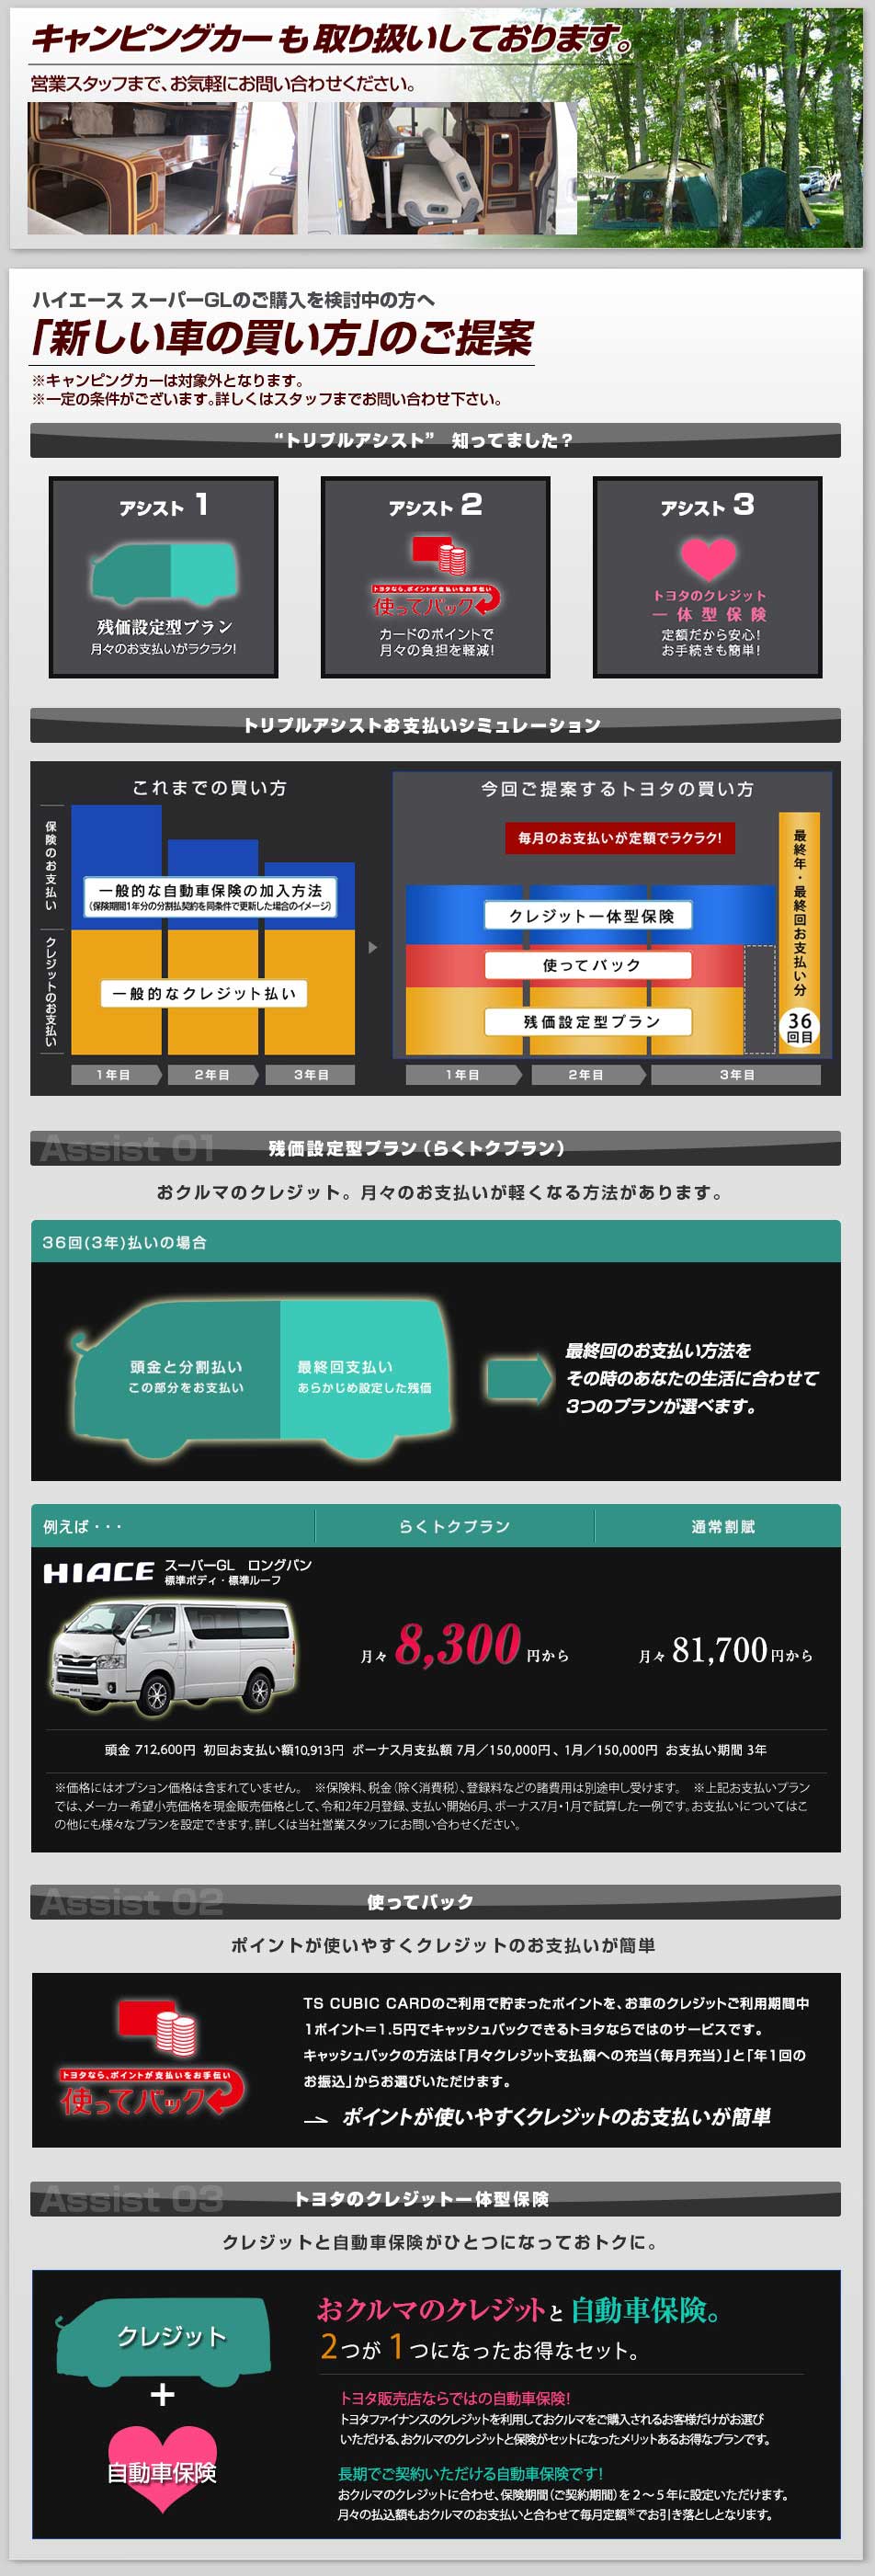 トヨタ ハイエース スーパーgl 札幌トヨペットwebサイト